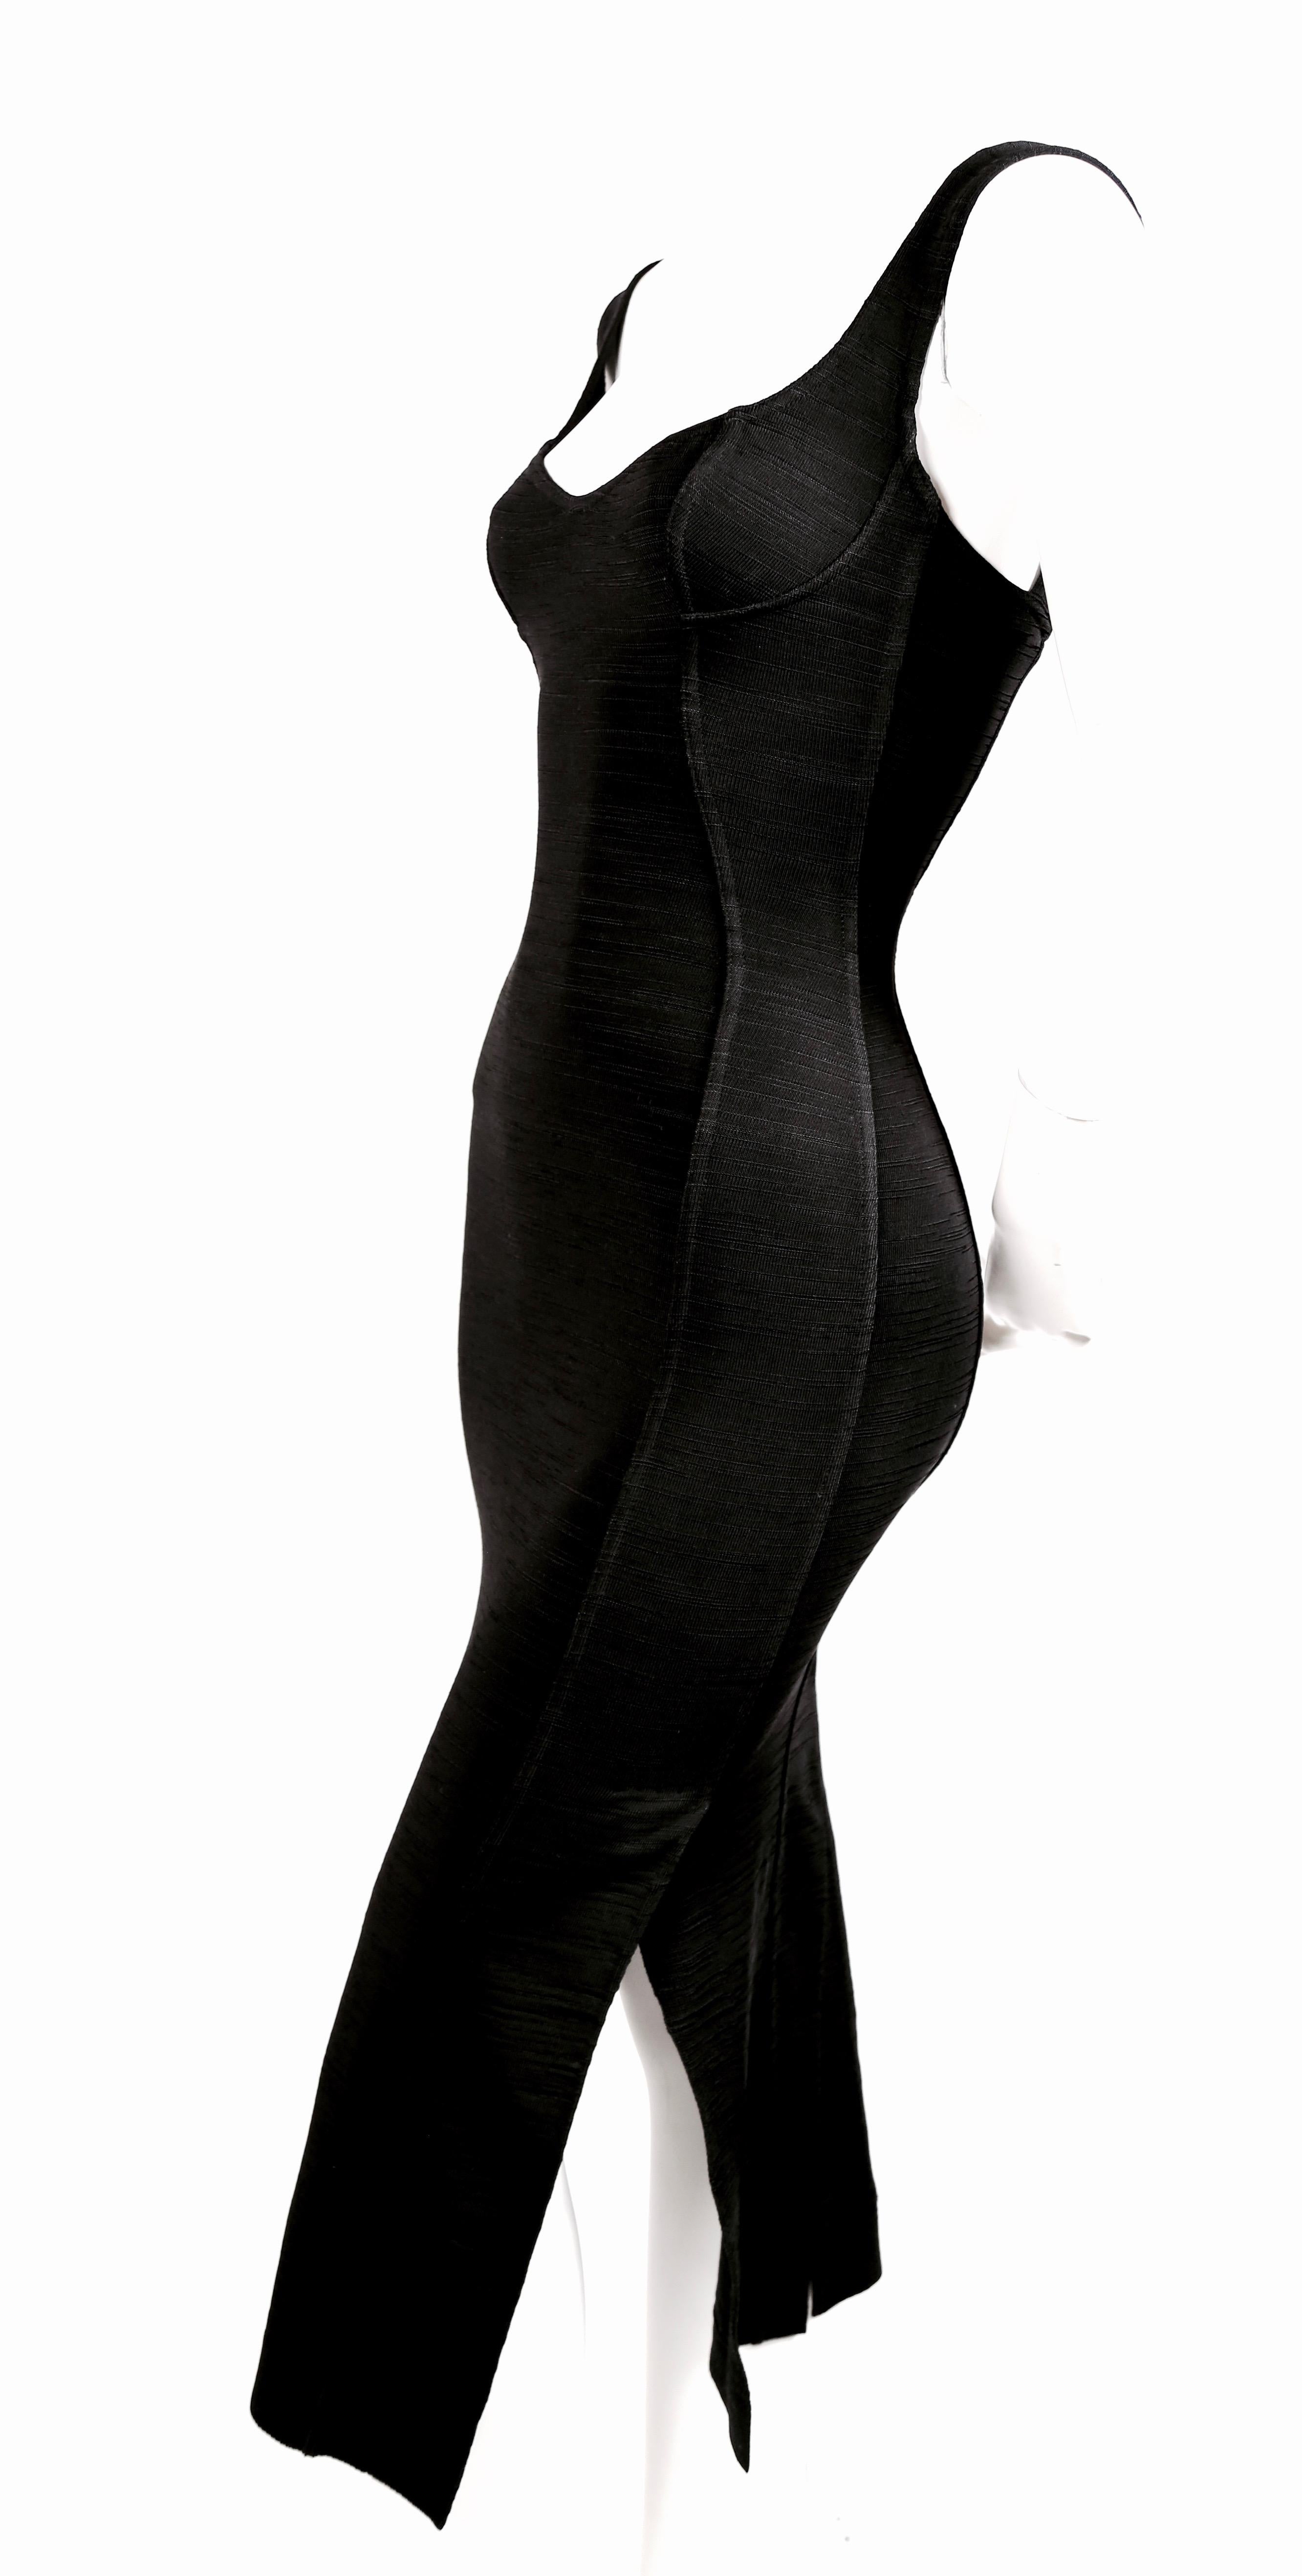 Women's or Men's 1991 AZZEDINE ALAIA long black runway dress with bustier seams